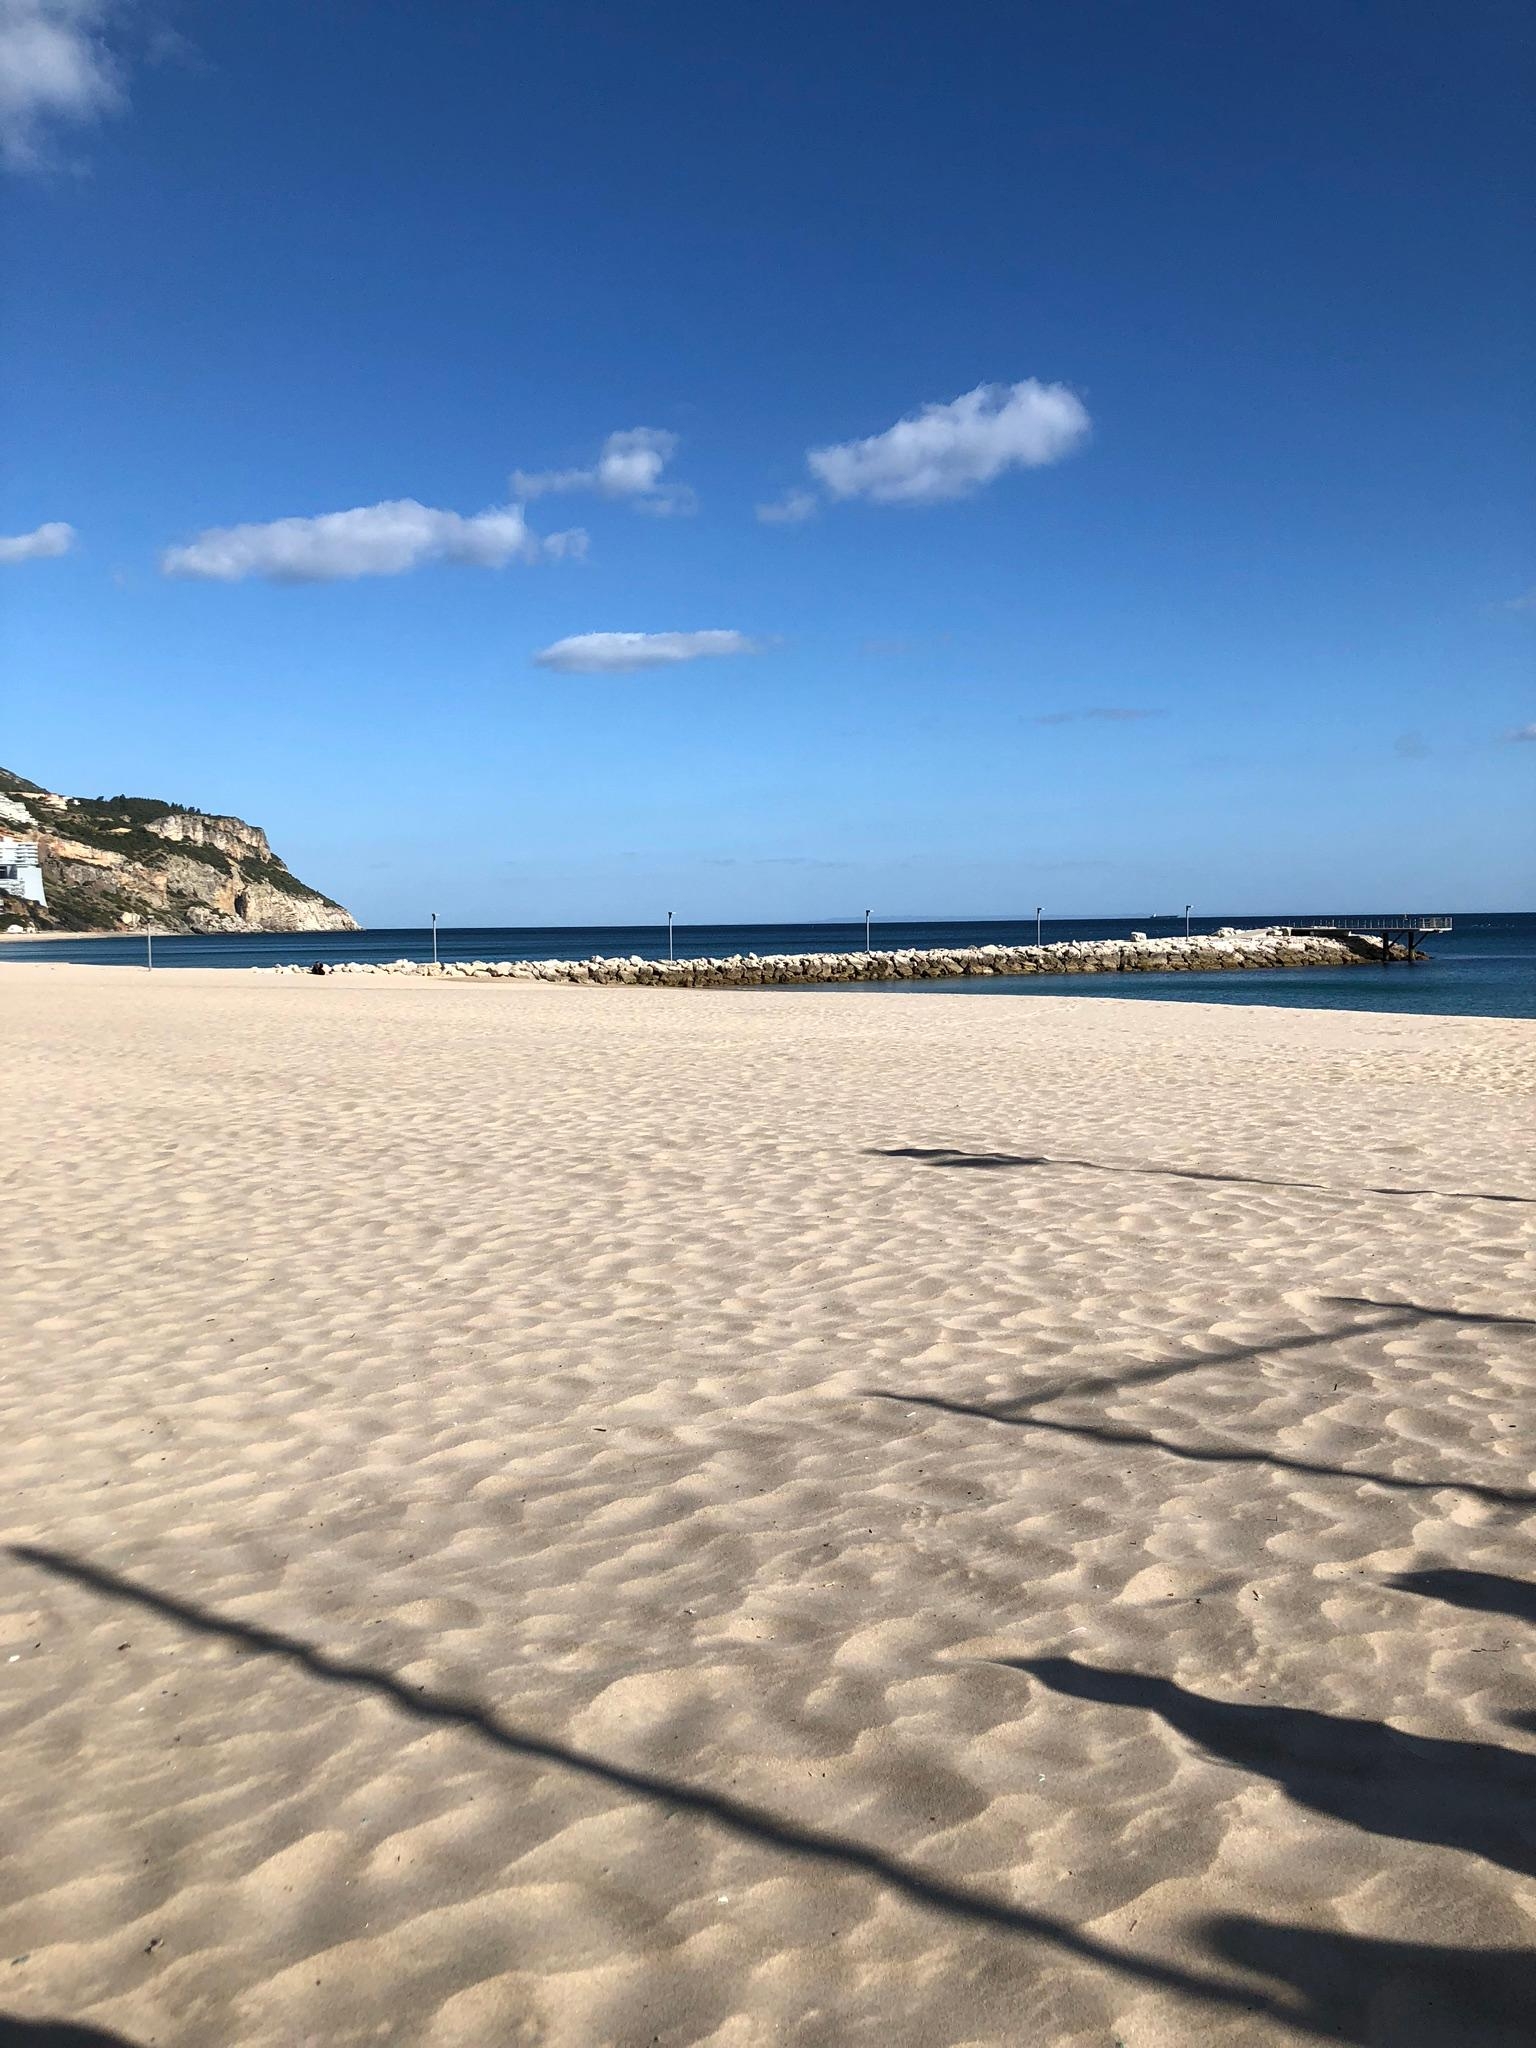 #wellness am leeren Sandstrand in #portugal 🌴 #travelchallenge